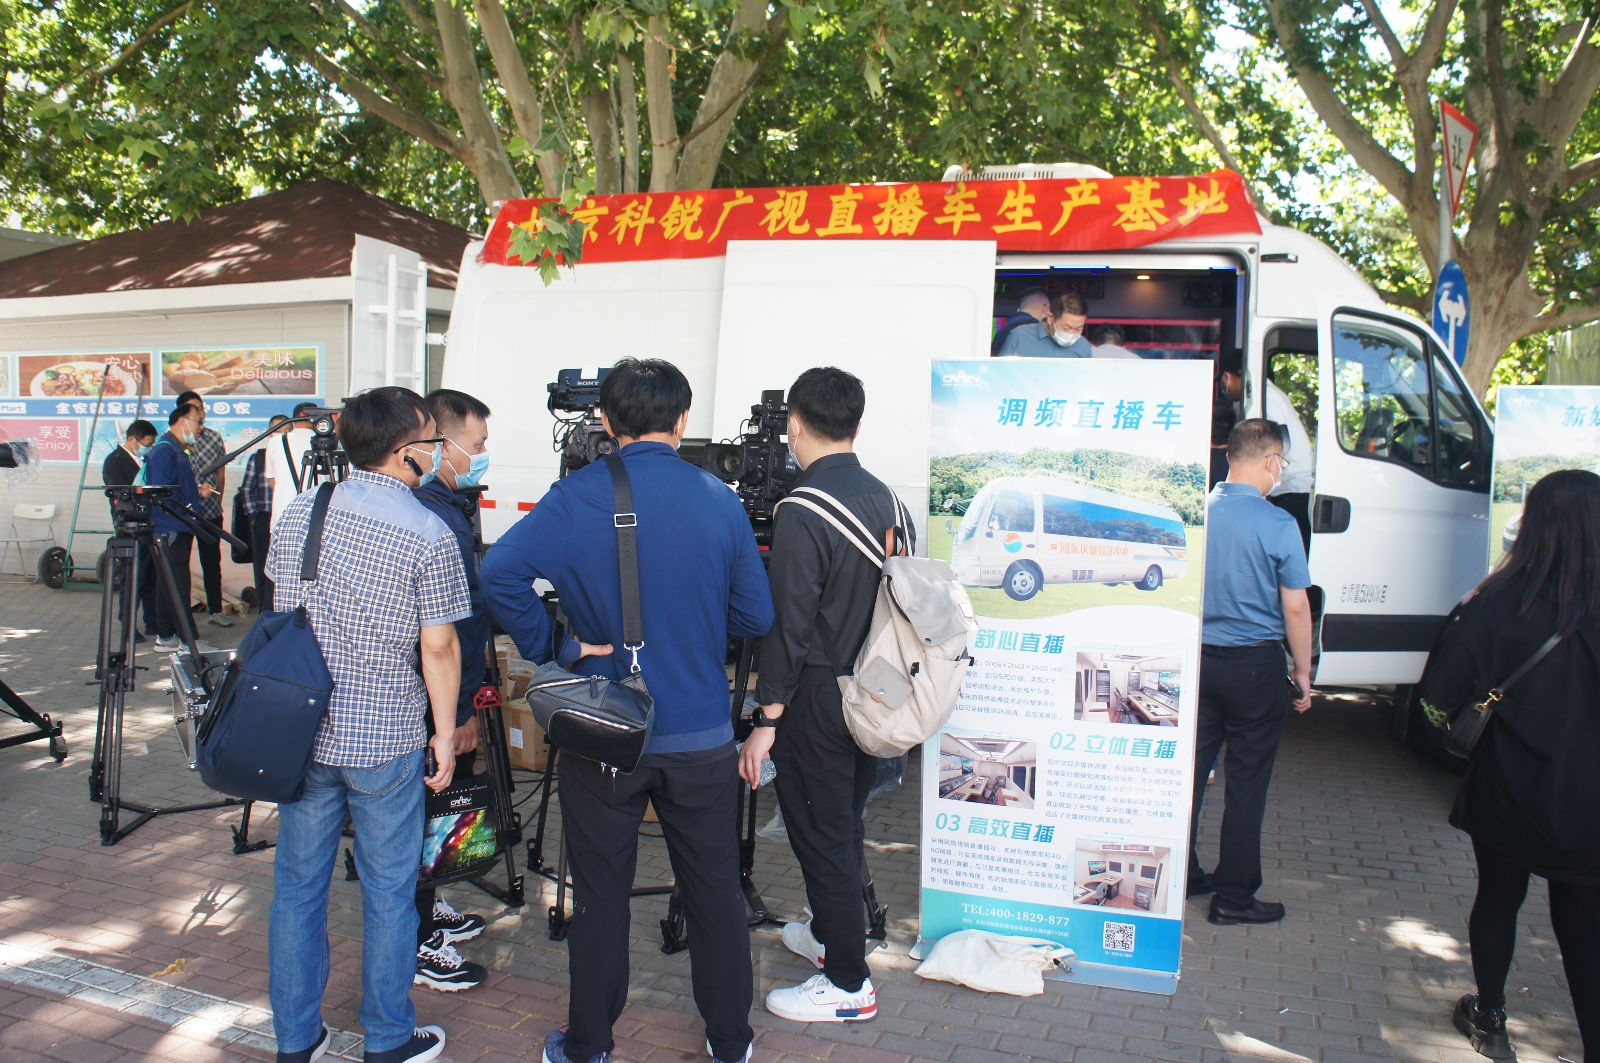 北京科锐广视公司携最新打造的 4K+5G 融媒体直播车、新媒体 IP 化 4K 超高清直播车参加了此次会展。